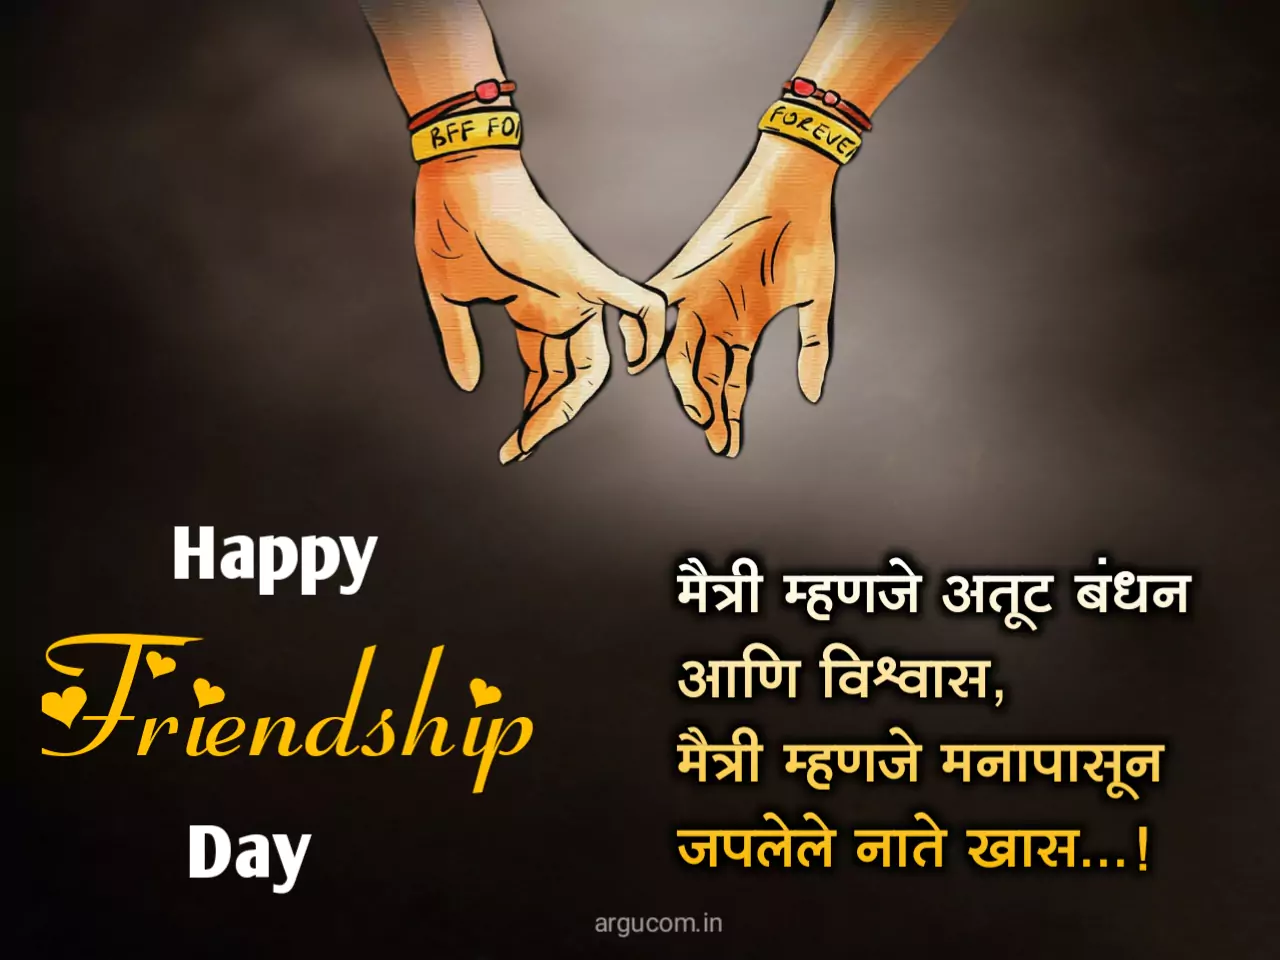 Happy friendship day wishes in marathi, फ्रेंडशिप डे शुभेच्छा फोटो मराठी